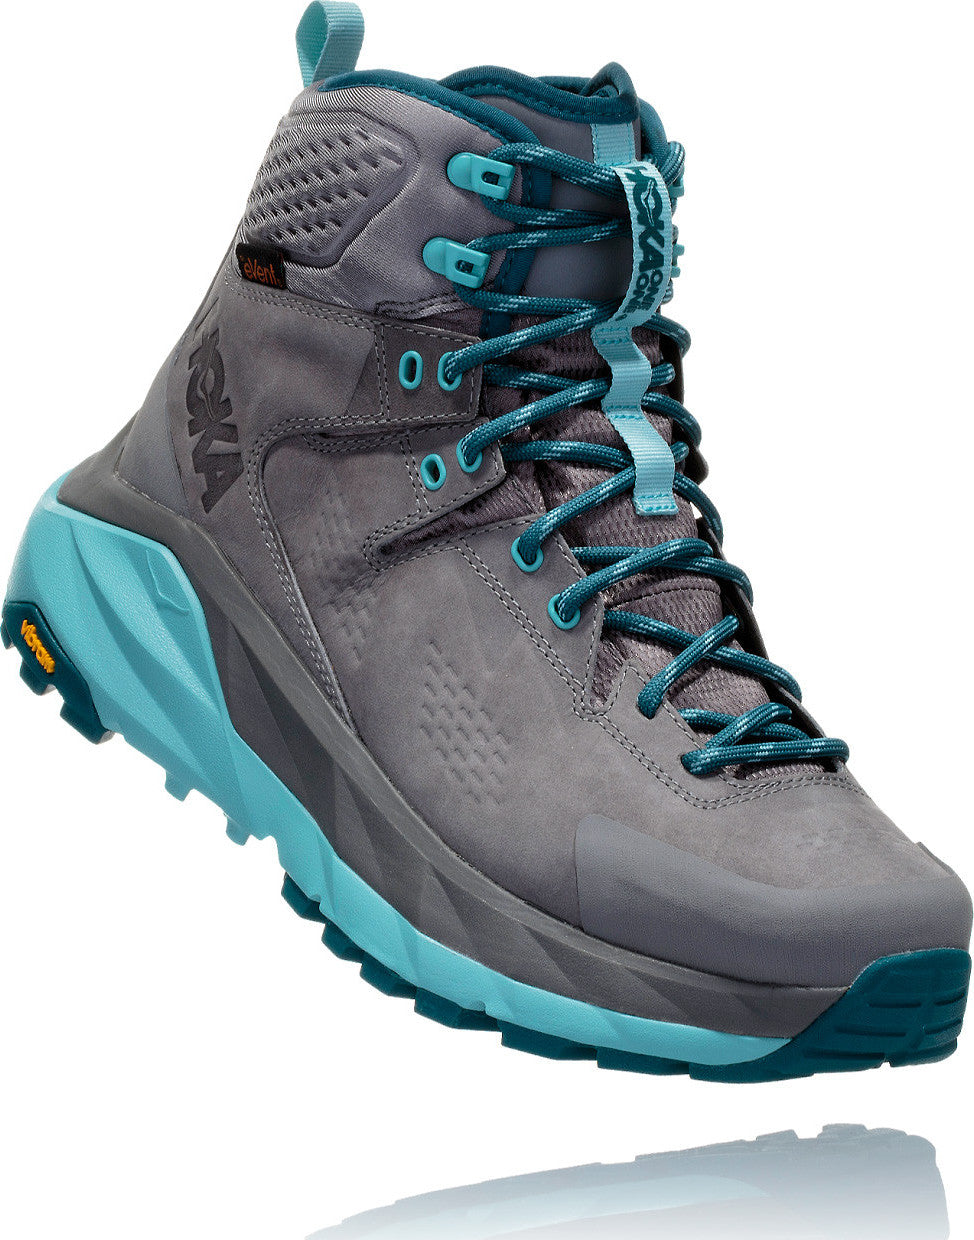 Hoka One One Sky Kaha Hiking Boots - Women's | Altitude Sports